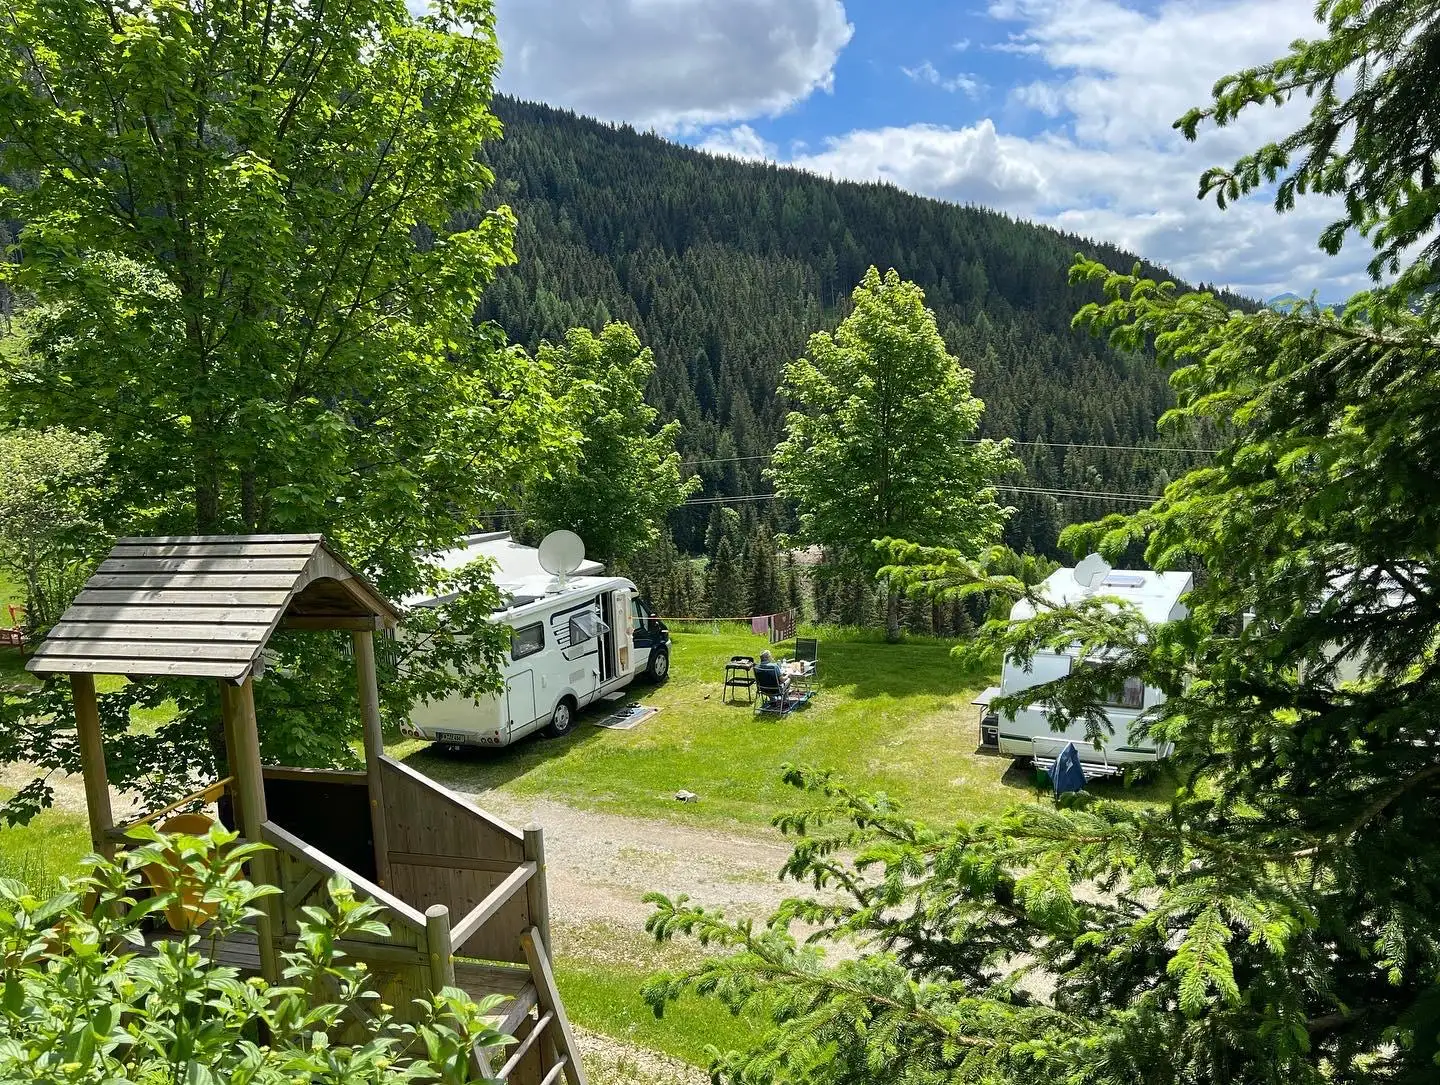 Camping Dachstein und Pension Gsenger #Camping#Aktivitäten